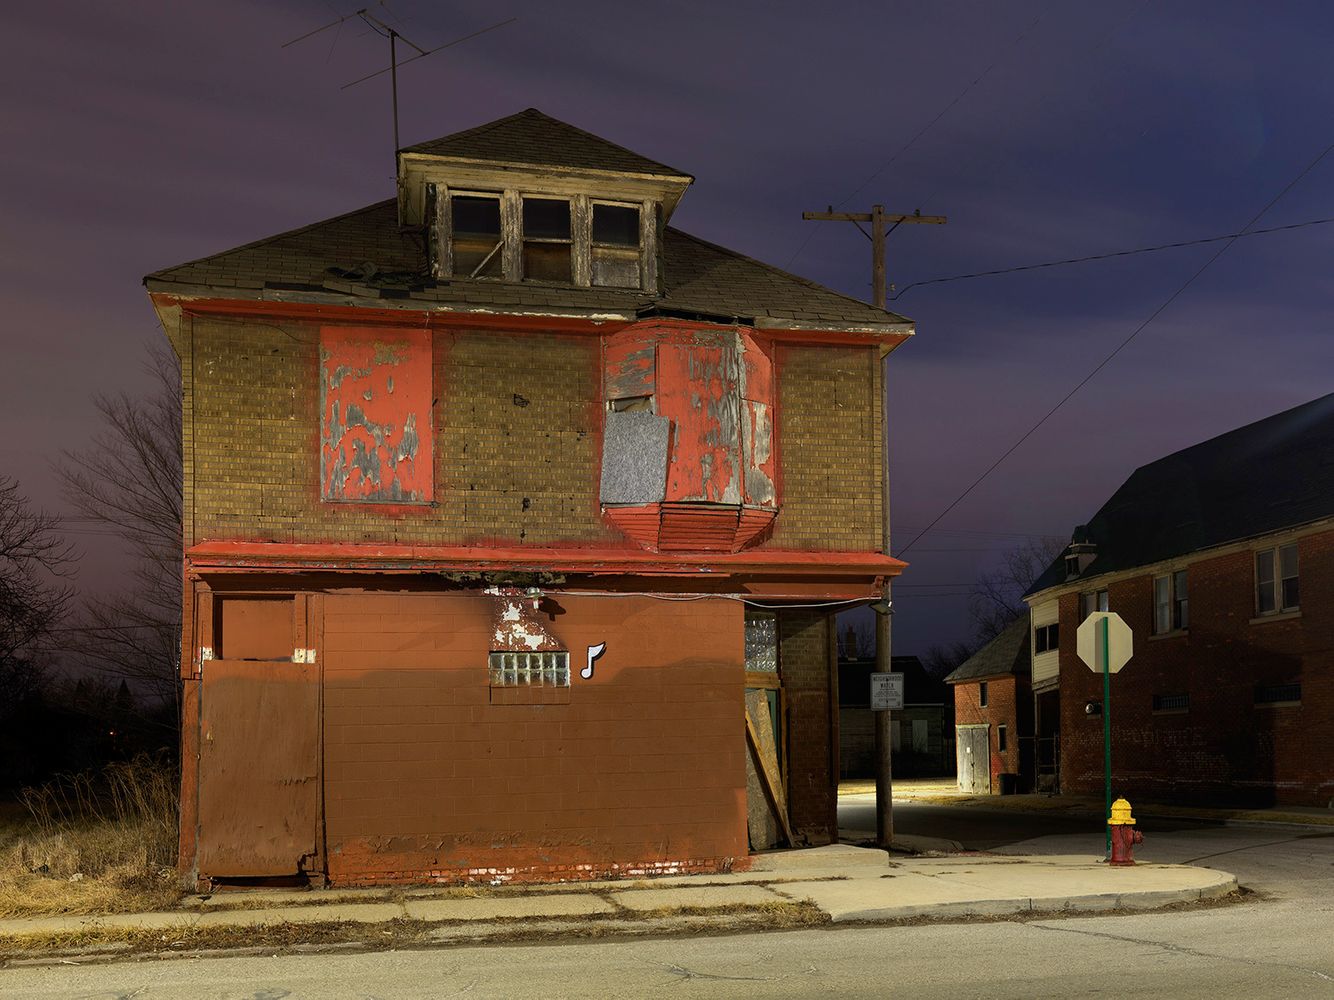 One Note House, Chene Street, Polsetown, Eastside, Detroit 2016